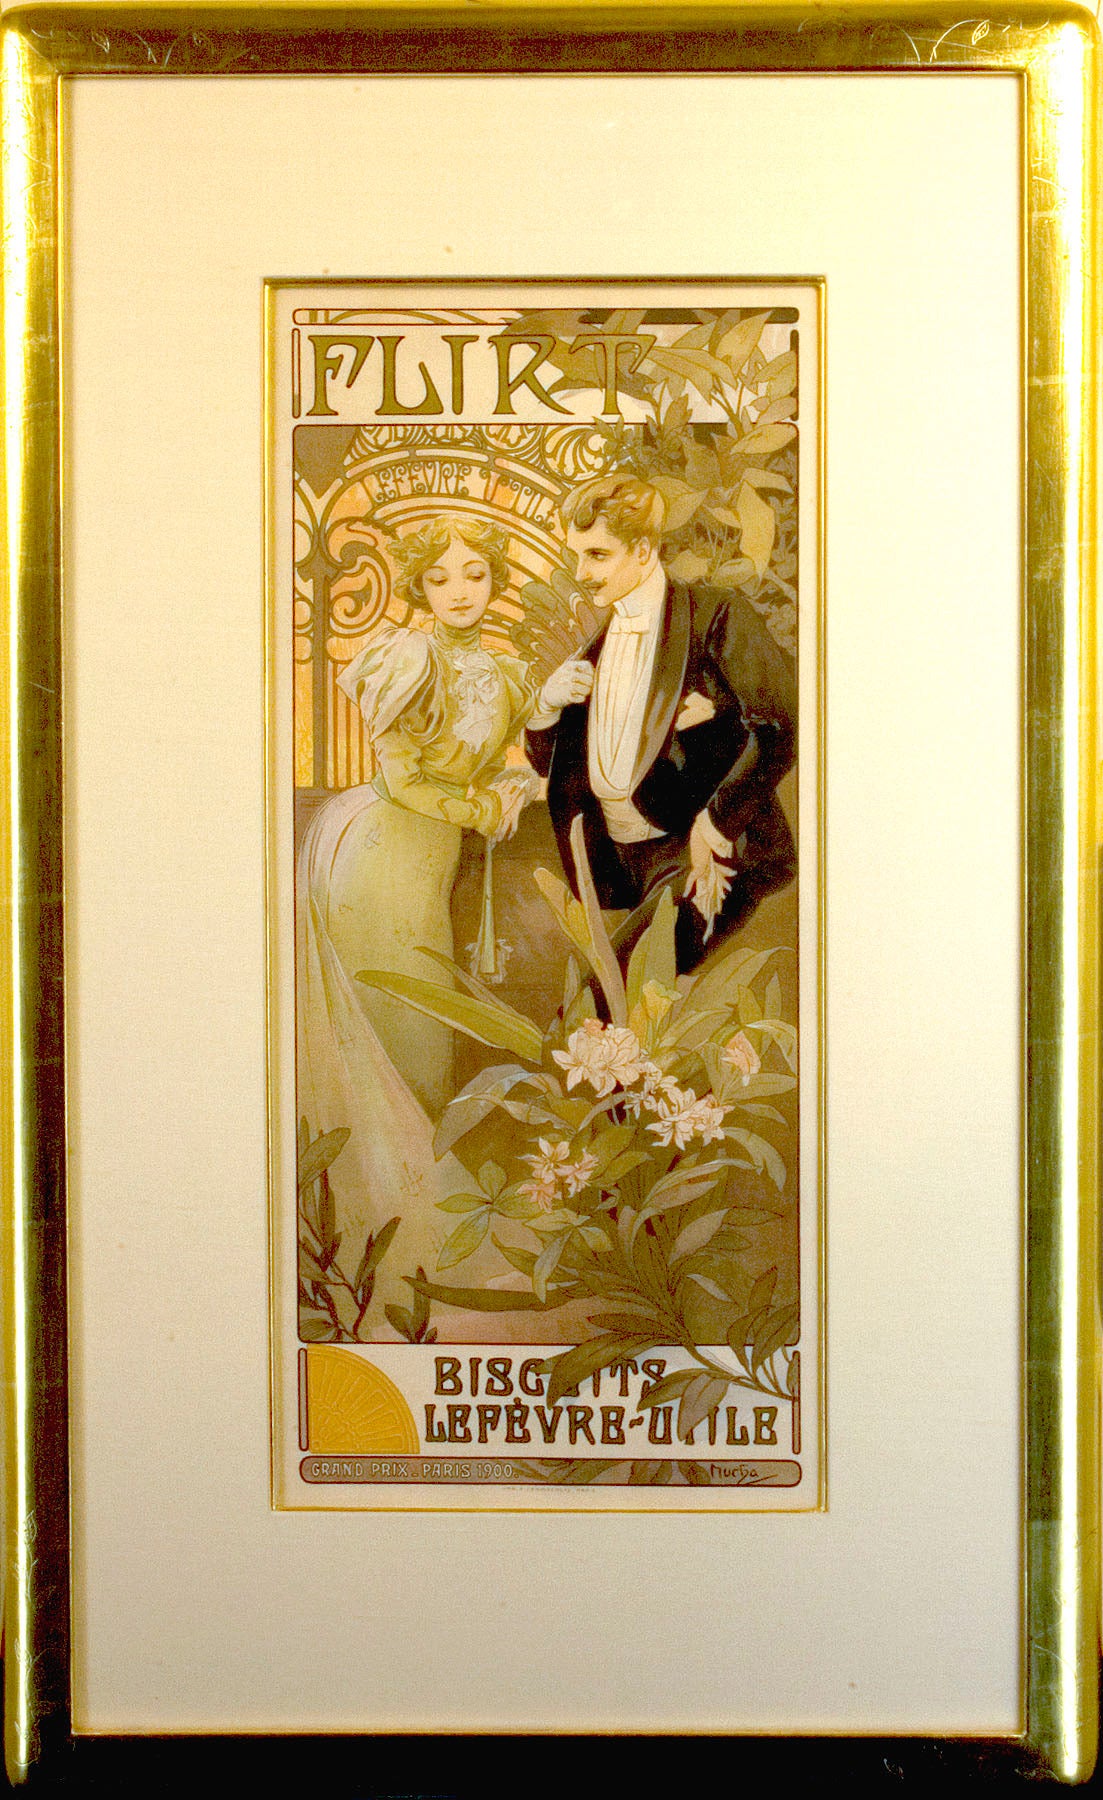 Original Art Nouveau Poster by Mucha